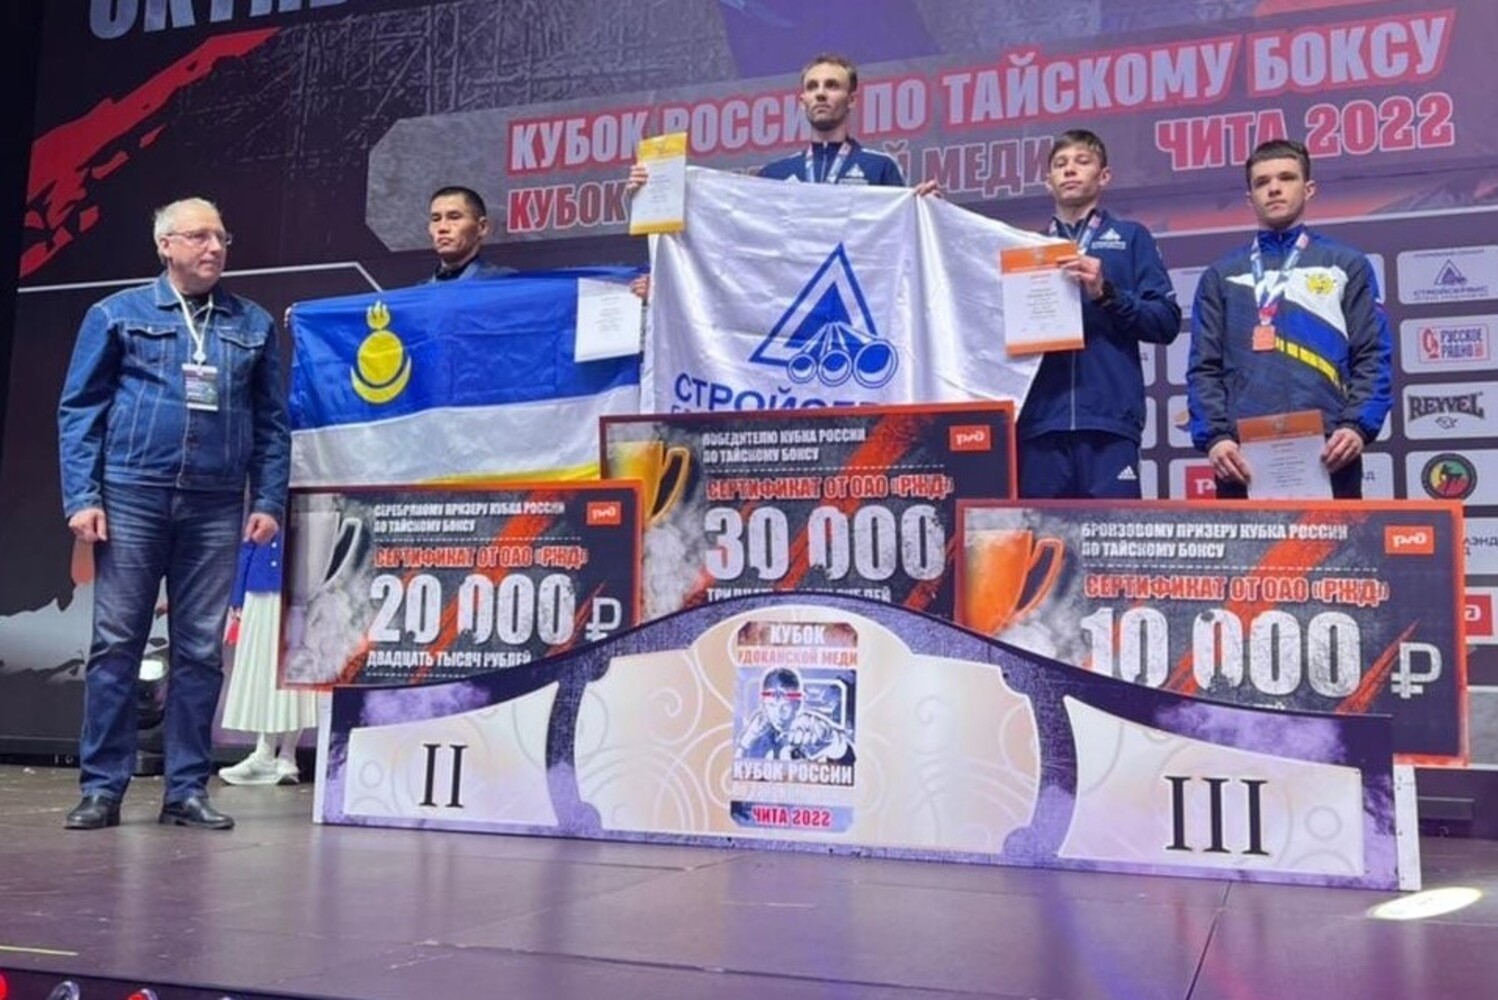 Тайбоксеры из Кузбасса в очередной раз стали чемпионами России при поддержке АО Стройсервис. Стройсервис